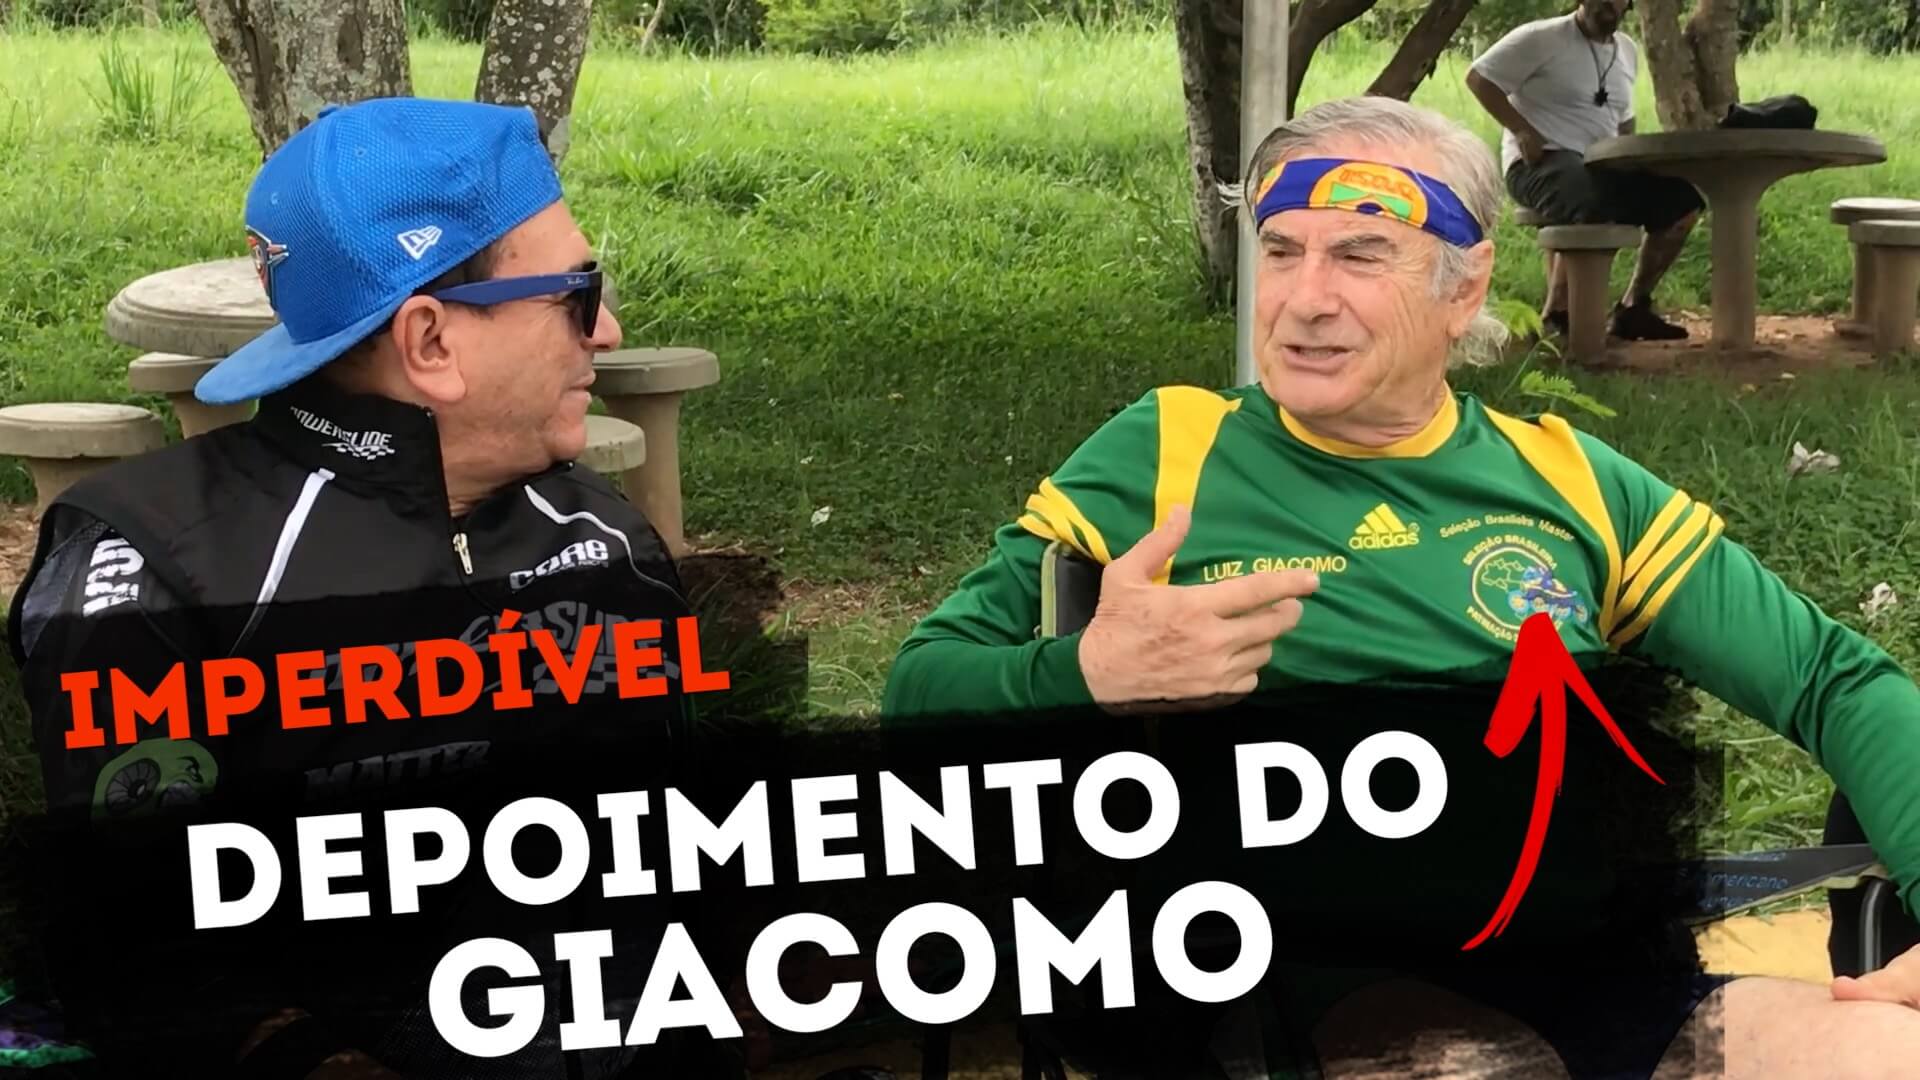 Neste vídeo e matéria para o Blog Vou de Patins, Luiz Giácomo faz seu depoimento a respeito da patinação de velocidade no Brasil e comenta como viu a chegada ao esporte do novo atleta, Roberto Marinho